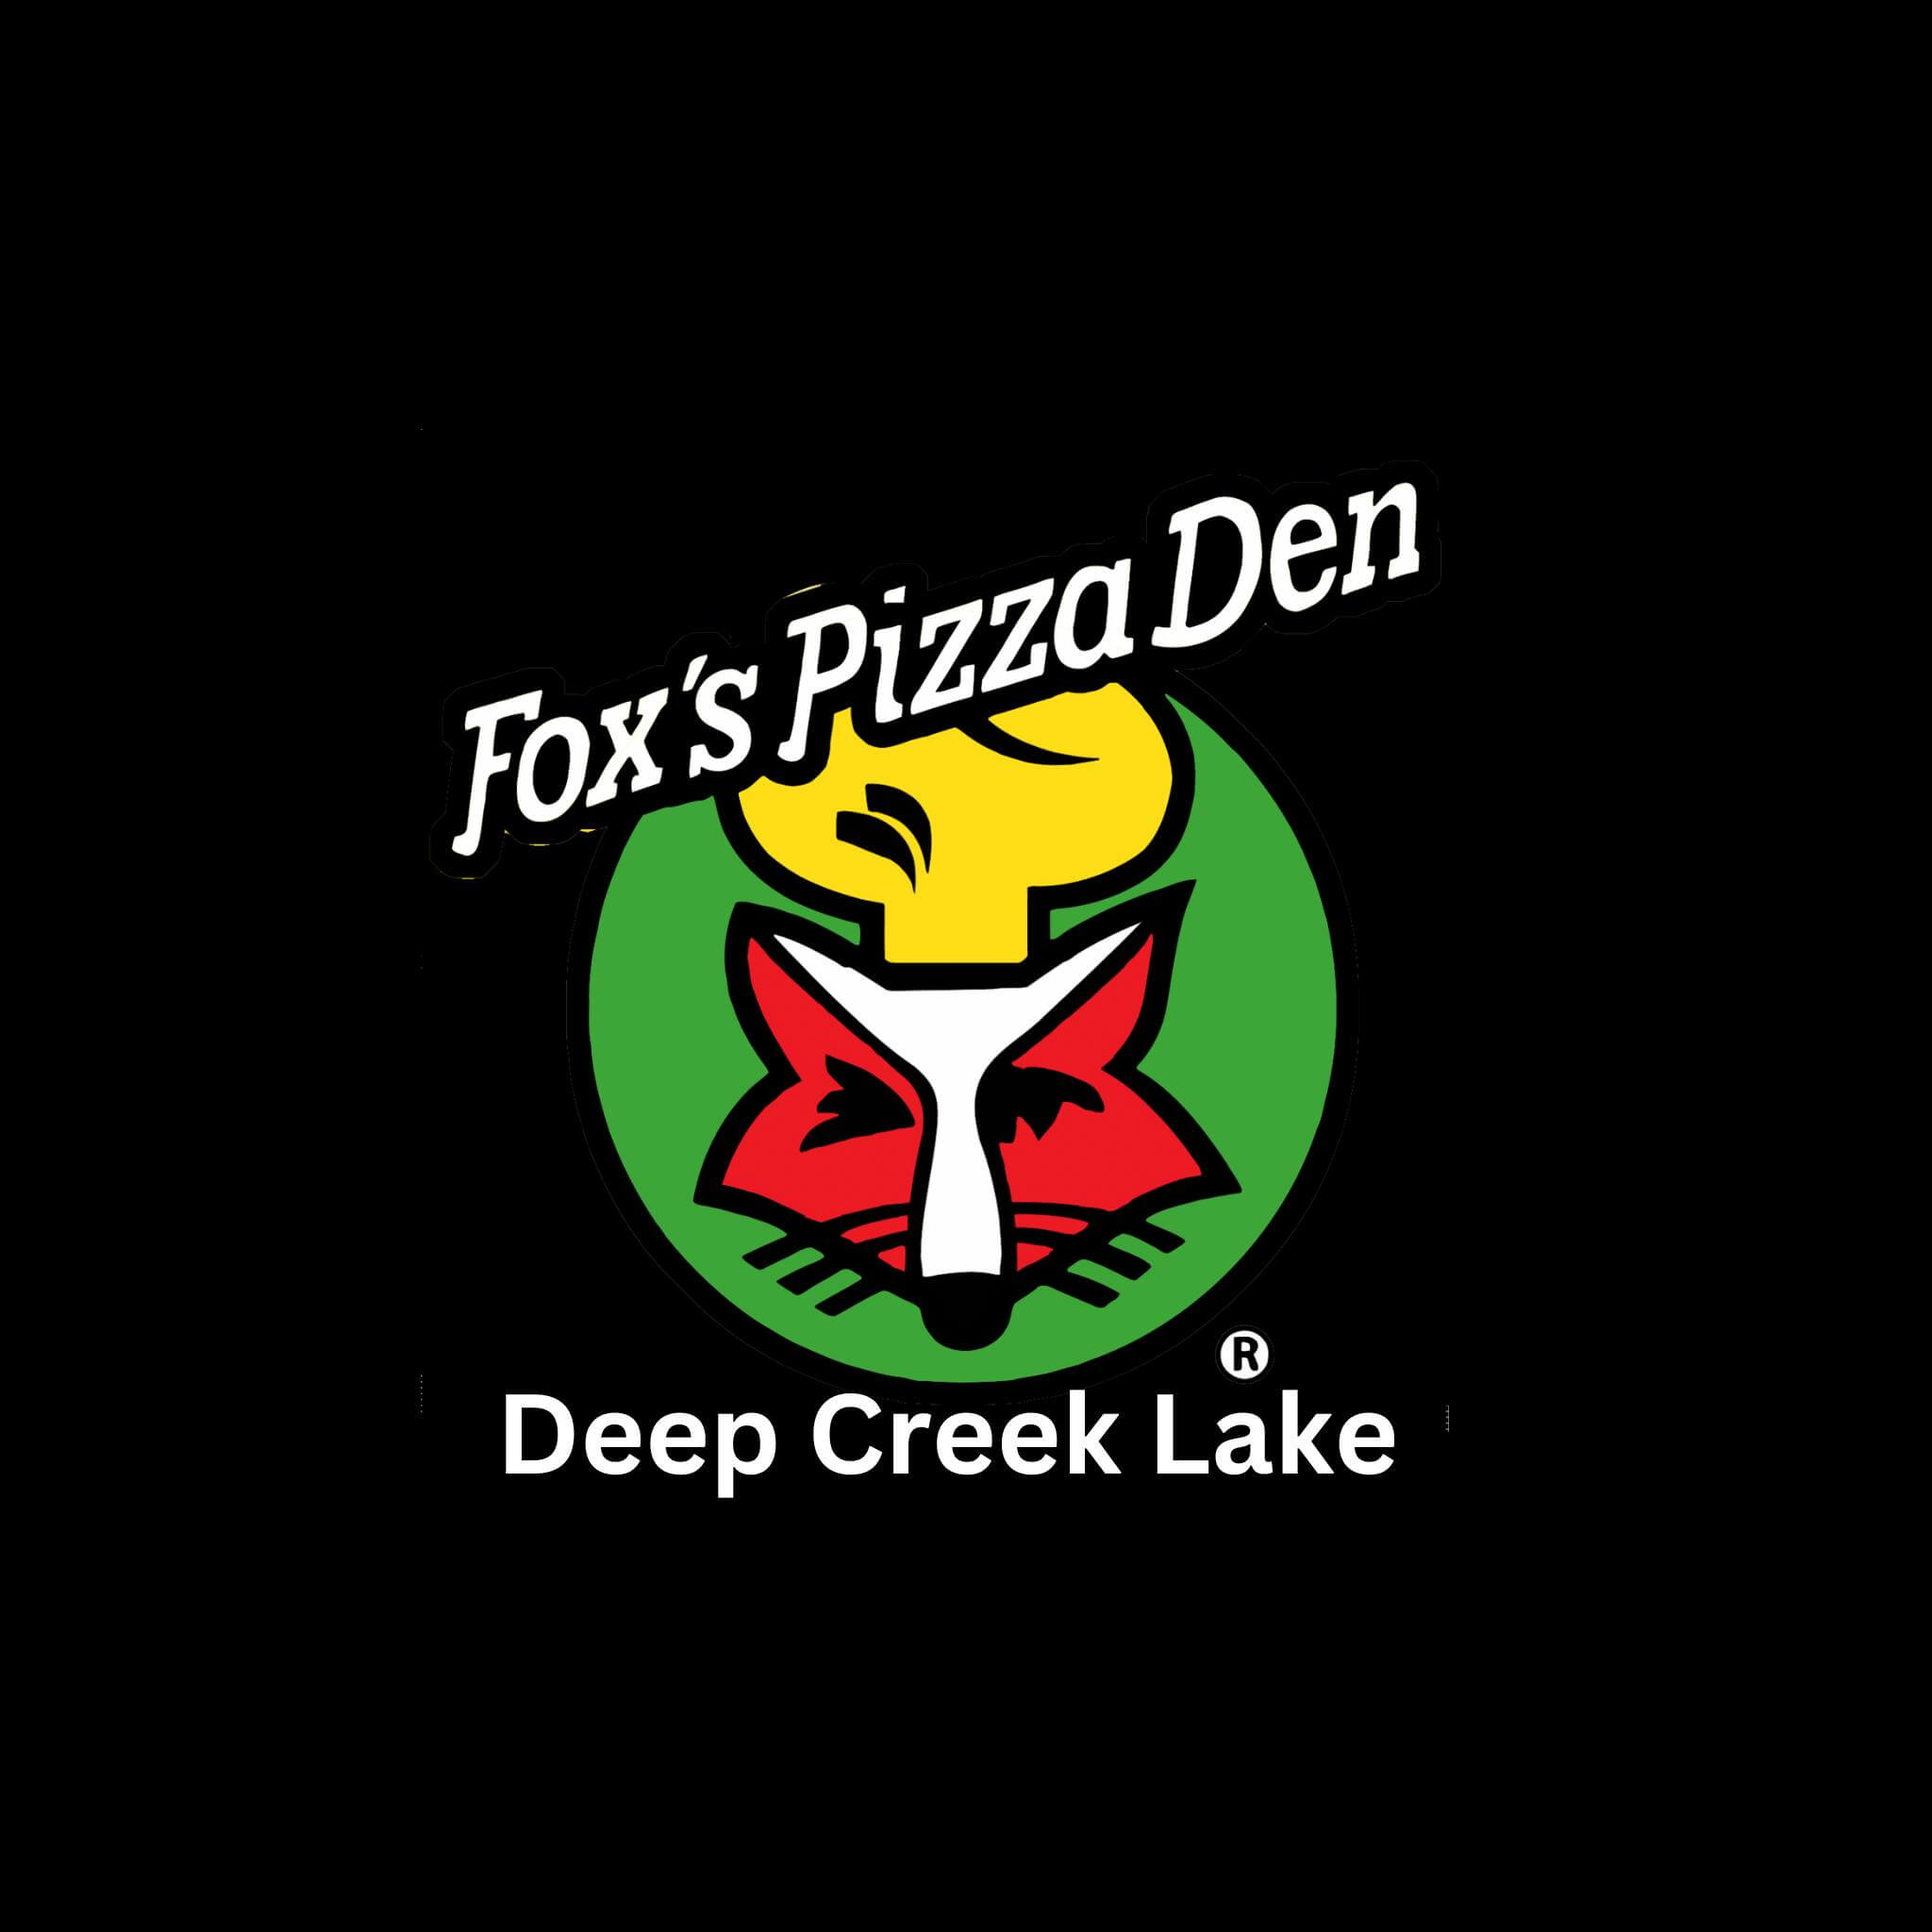 Fox's Pizza Den at Deep Creek Lake, MD